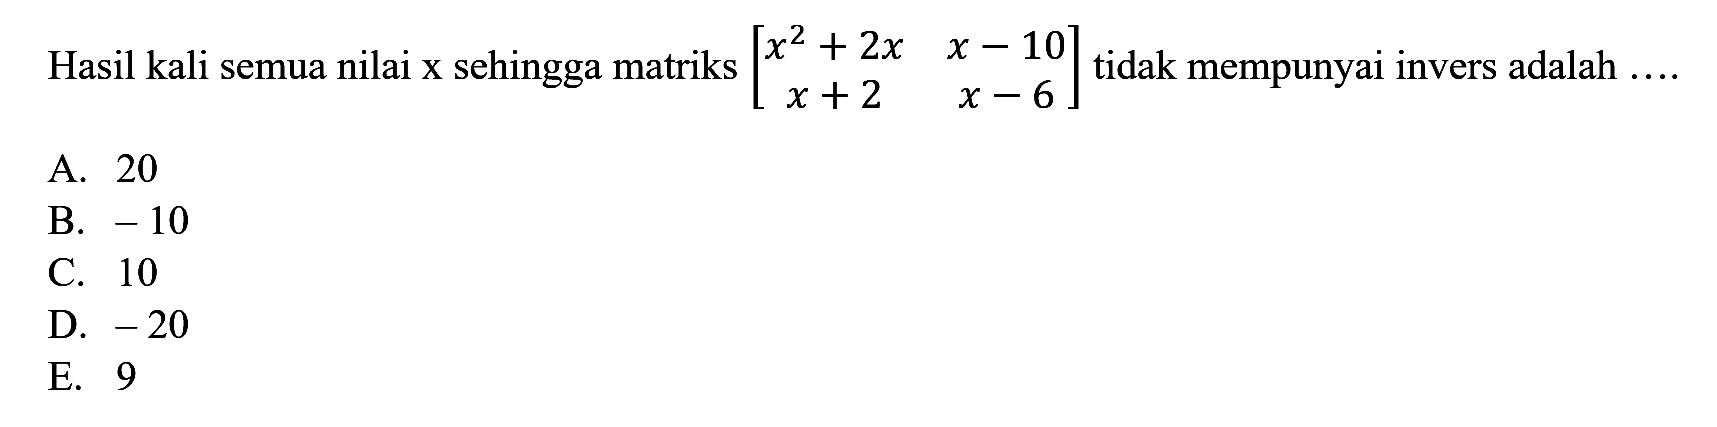 Hasil kali semua nilai x sehingga matriks [x^2+2x x-10 x+2 x-6] tidak mempunyai invers adalah ....